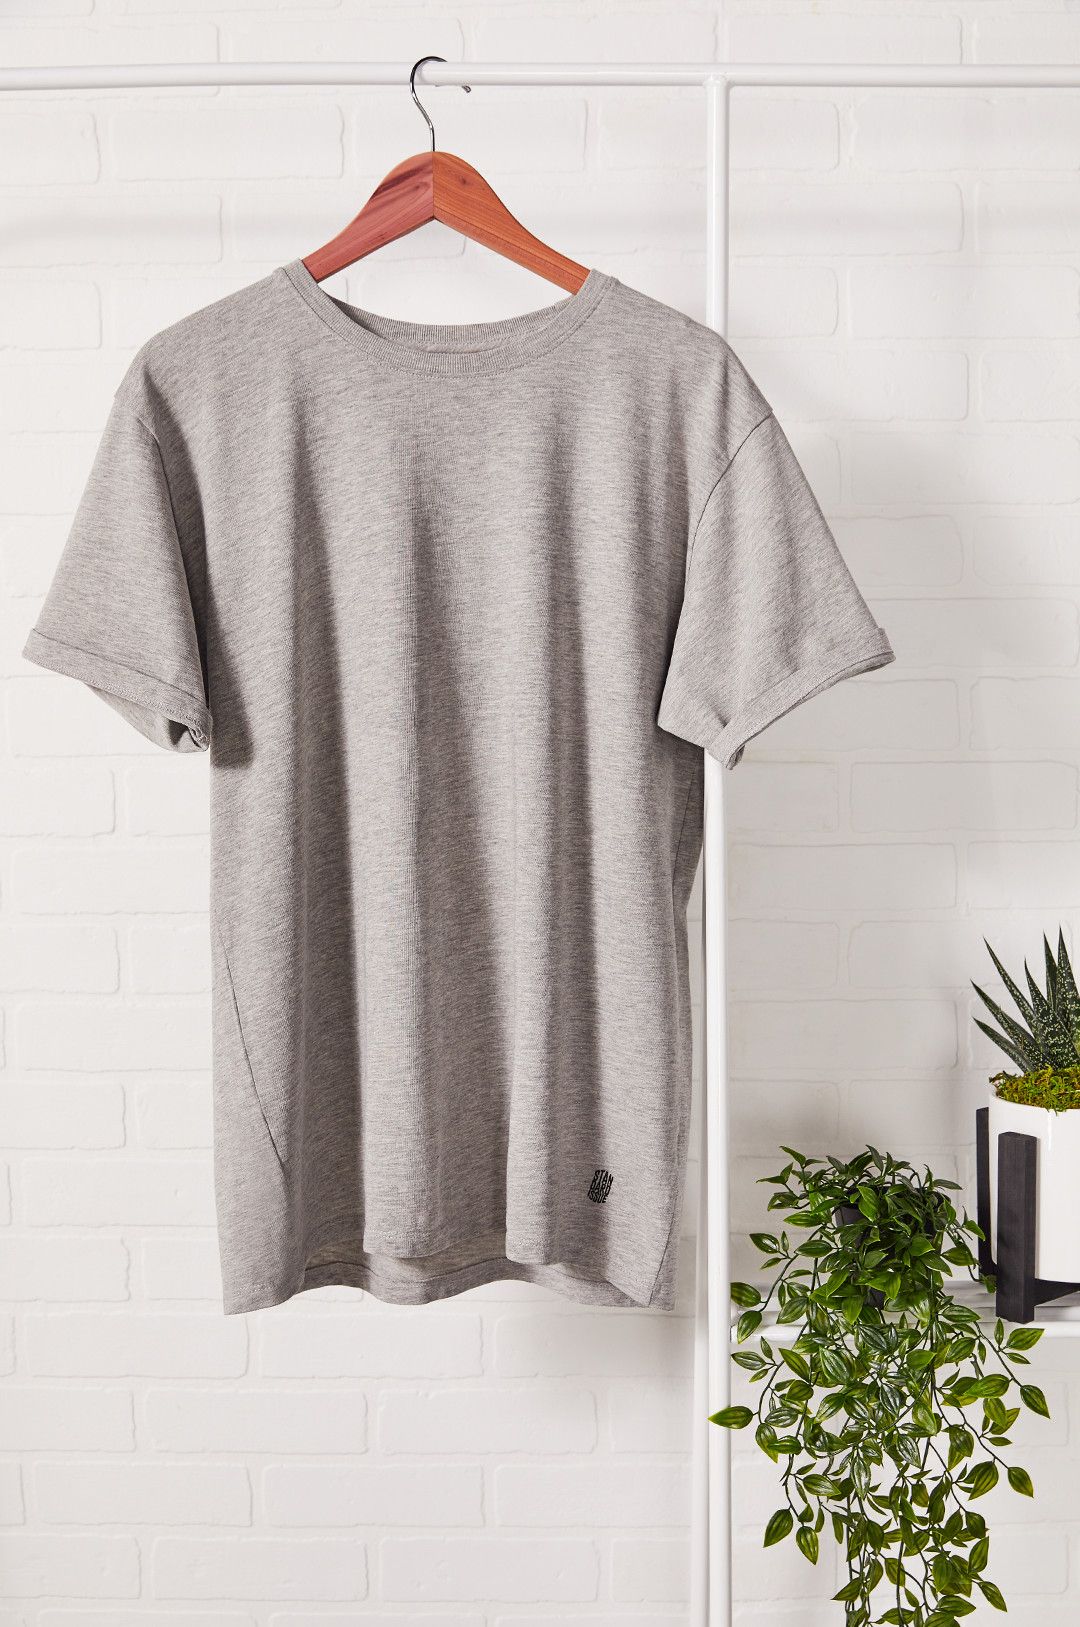 T-Shirt Hanger